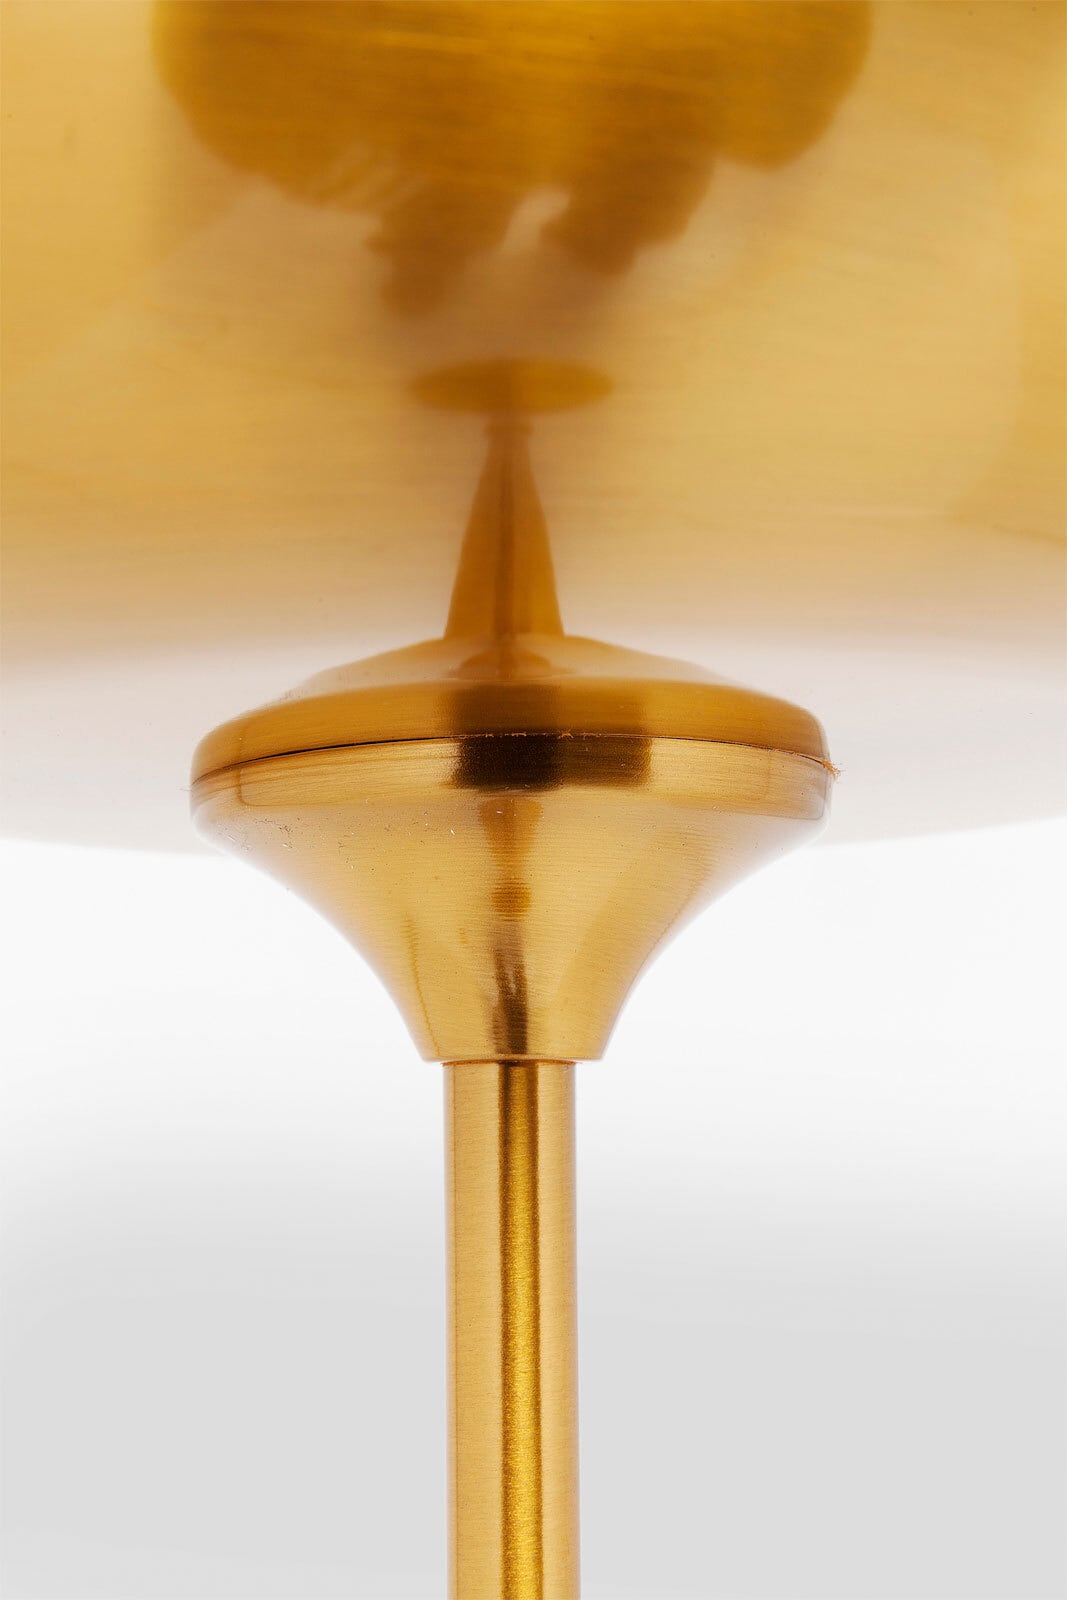 KARE DESIGN Retrofit Stehlampe GLOBLET BALL goldfarbig